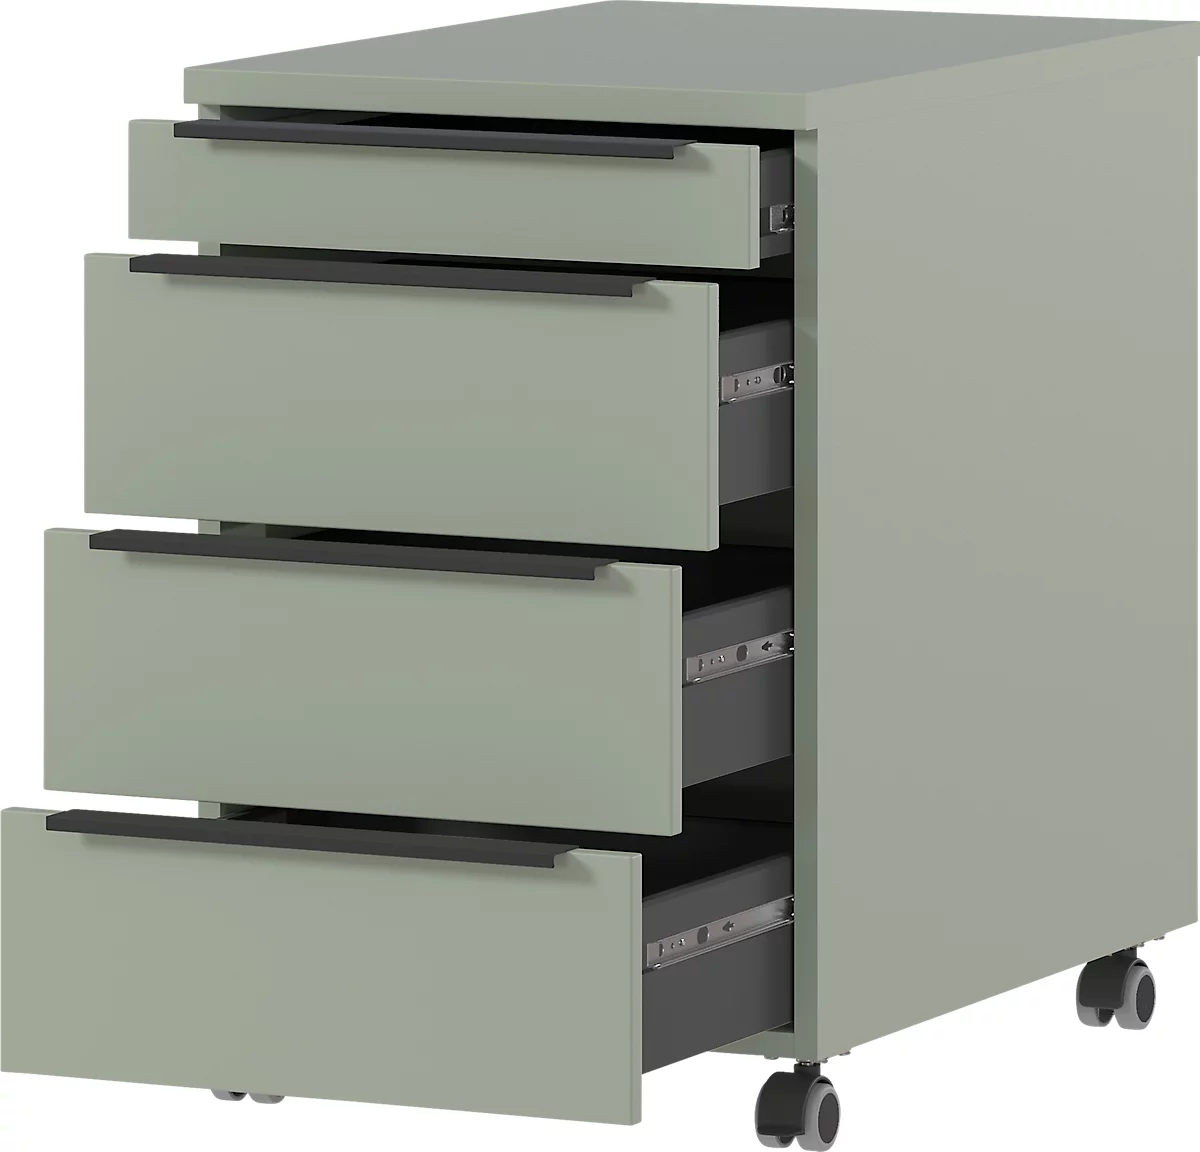 Rollcontainer, 4 Schubladen inkl. Utensilienfach, B 420 x T 600 x H 630 mm, taupegrün